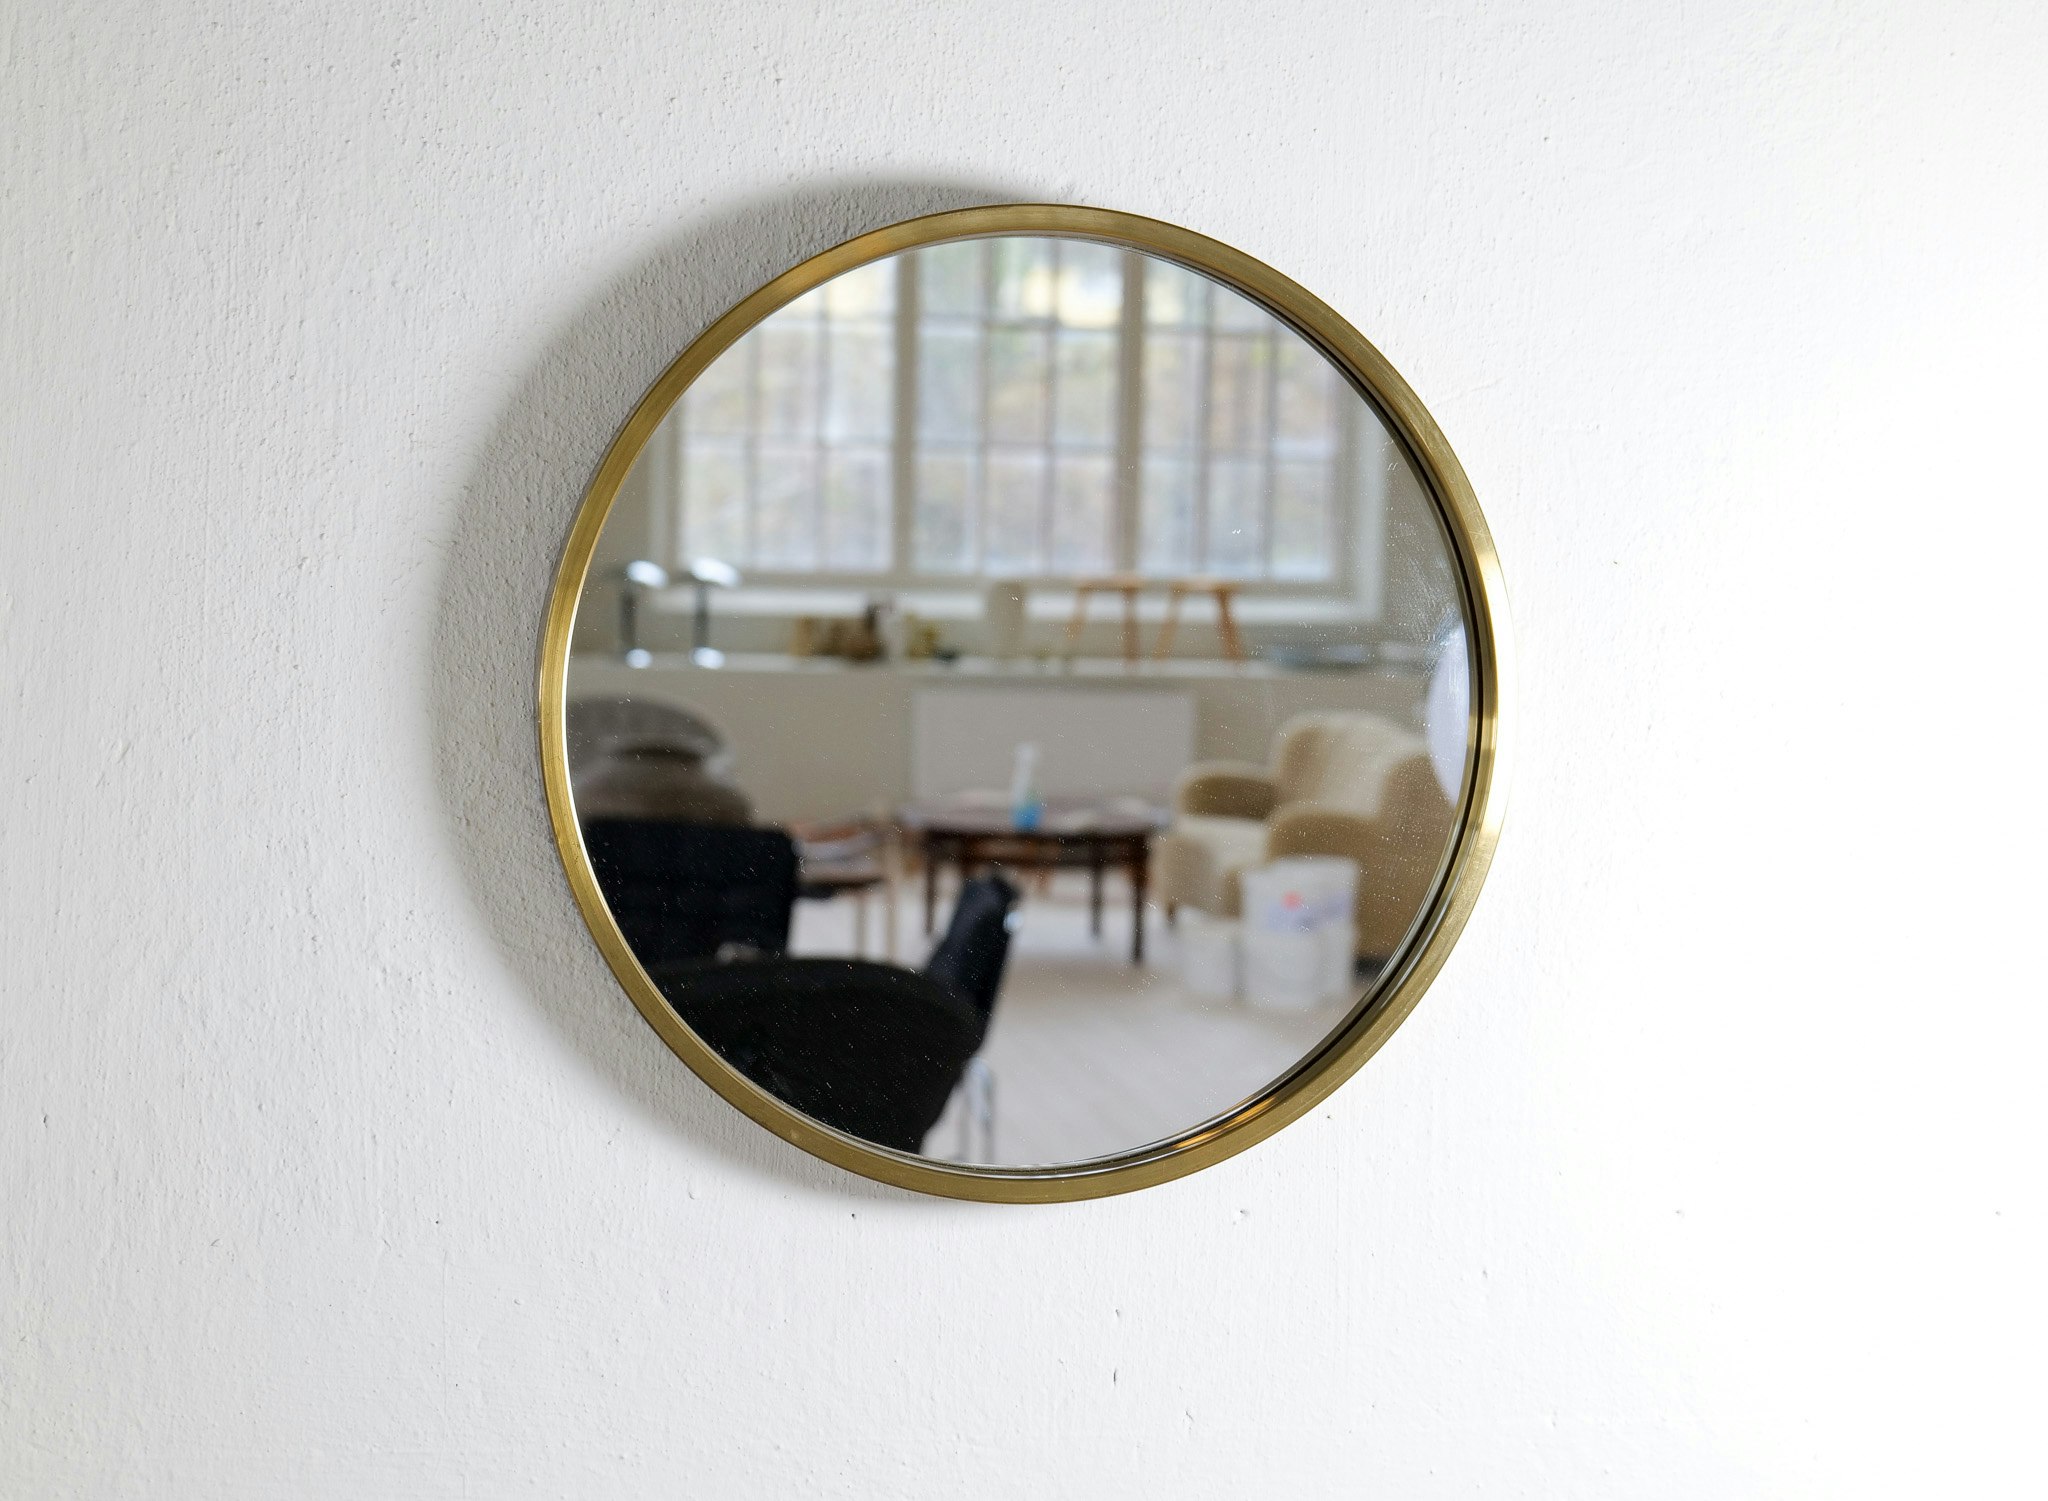 Midcentury Modern Rounded Brass Mirror by Glasmäster in Markaryd, Sweden, 1960s